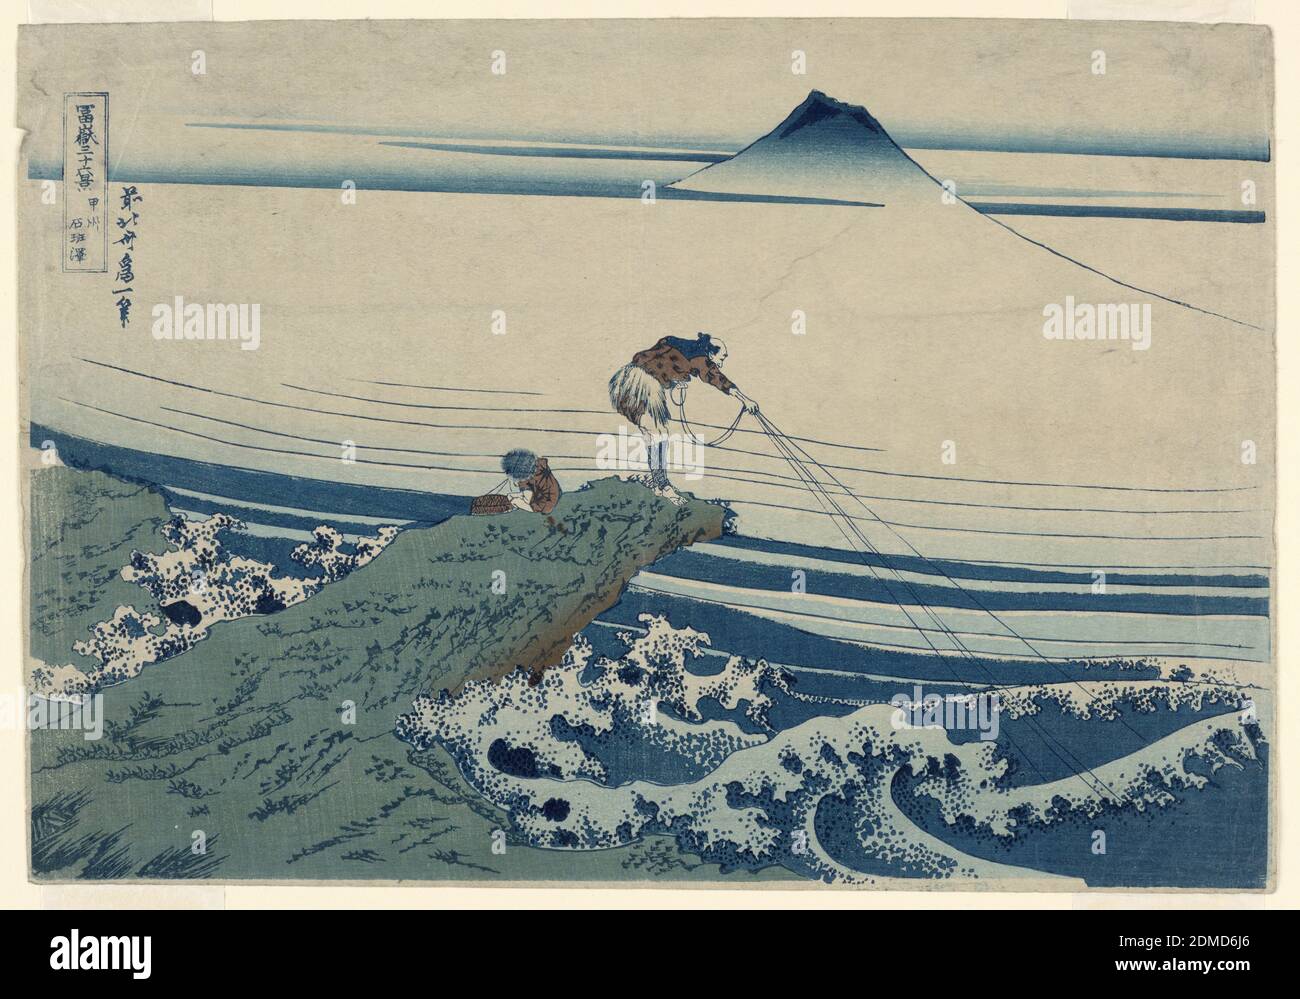 Kajikazawa in der Provinz Kei (Koshu Kajikazawa) aus der Serie, 36 Ansichten des Mt. Fuji, Katsushika Hokusai, 1760 – 1849, Eijudo, Holzschnitt in farbiger Tinte auf Papier, EIN Fischer und sein junger Lehrling sitzen auf einer überhängenden Klippe, die von heftigen Wellen zerquetscht wird. Das schäumende Wasser ähnelt dem der berühmten Great Wave vor Kanagawa. Die Gelassenheit des Mt. Fuji, der über den Nebel steigt, gleicht die turbulenten Meere aus. Die Haltung des Fischers und seine verlängerten Linien, ausgeworfen, kopieren die Dreiecksform des Mt. Fuji. Diese Symmetrie ist oft in vielen von Hokusais Drucken zu sehen. Stockfoto